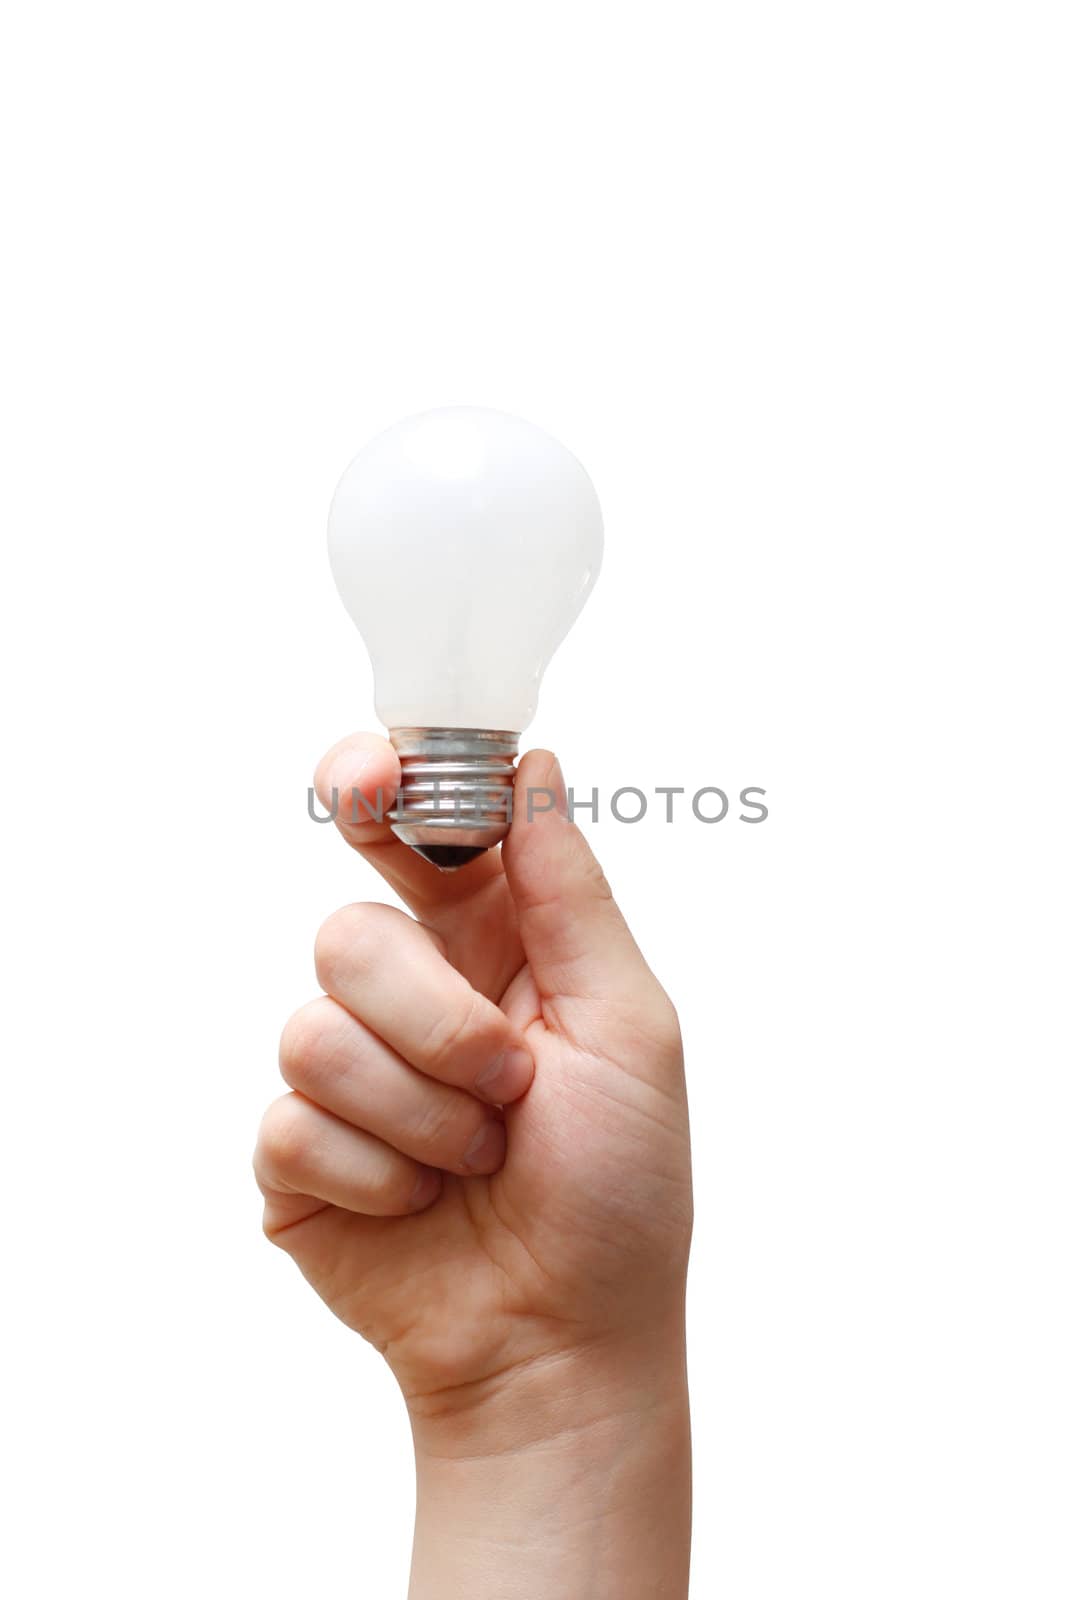 A hand holding a light bulb